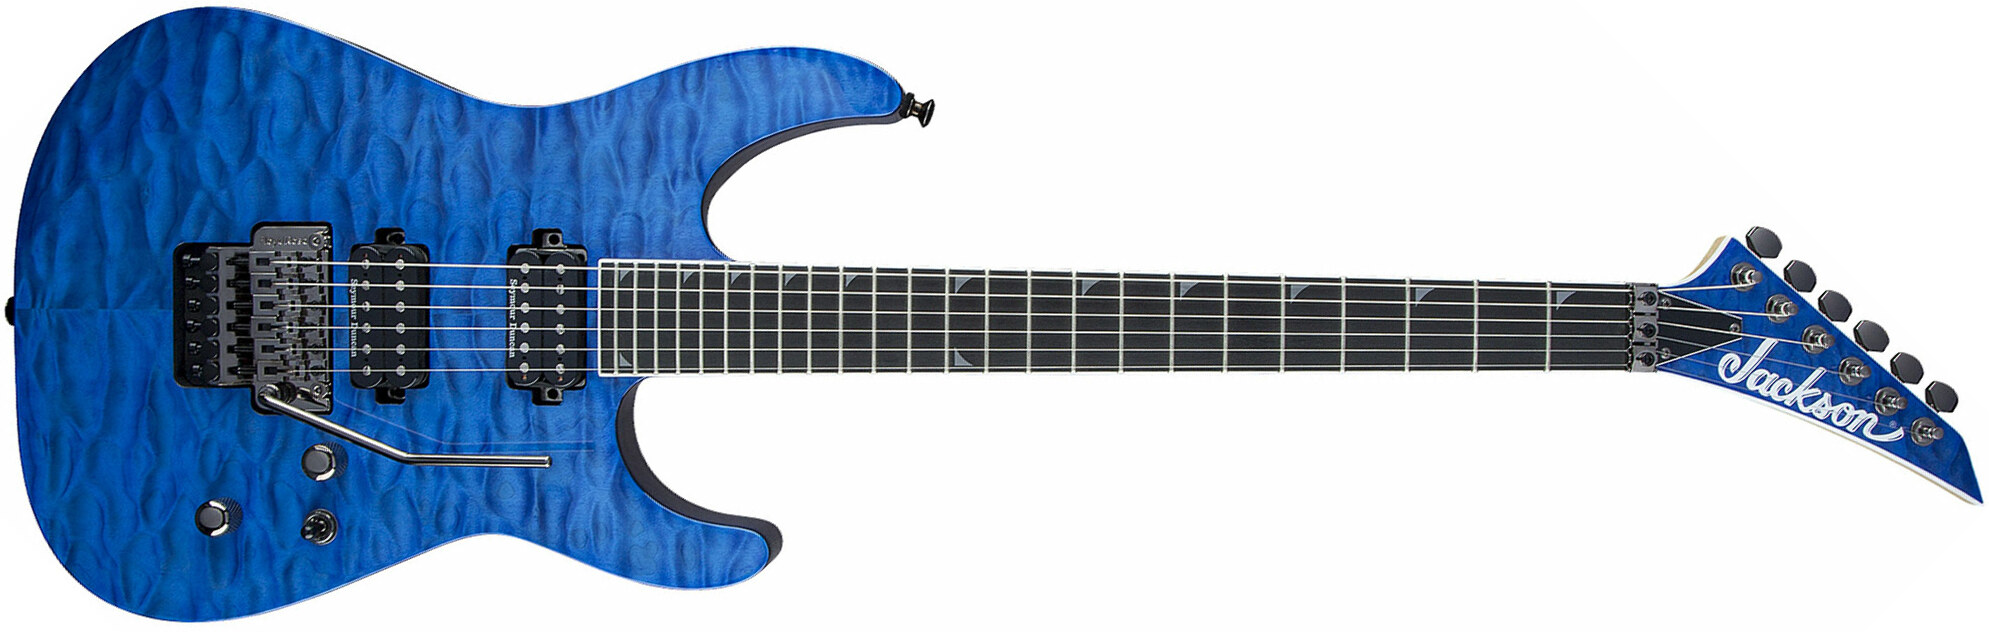 Jackson Soloist Pro Sl2q Mah Hh Seymour Duncan Fr Eb - Transparent Blue - Str shape electric guitar - Main picture